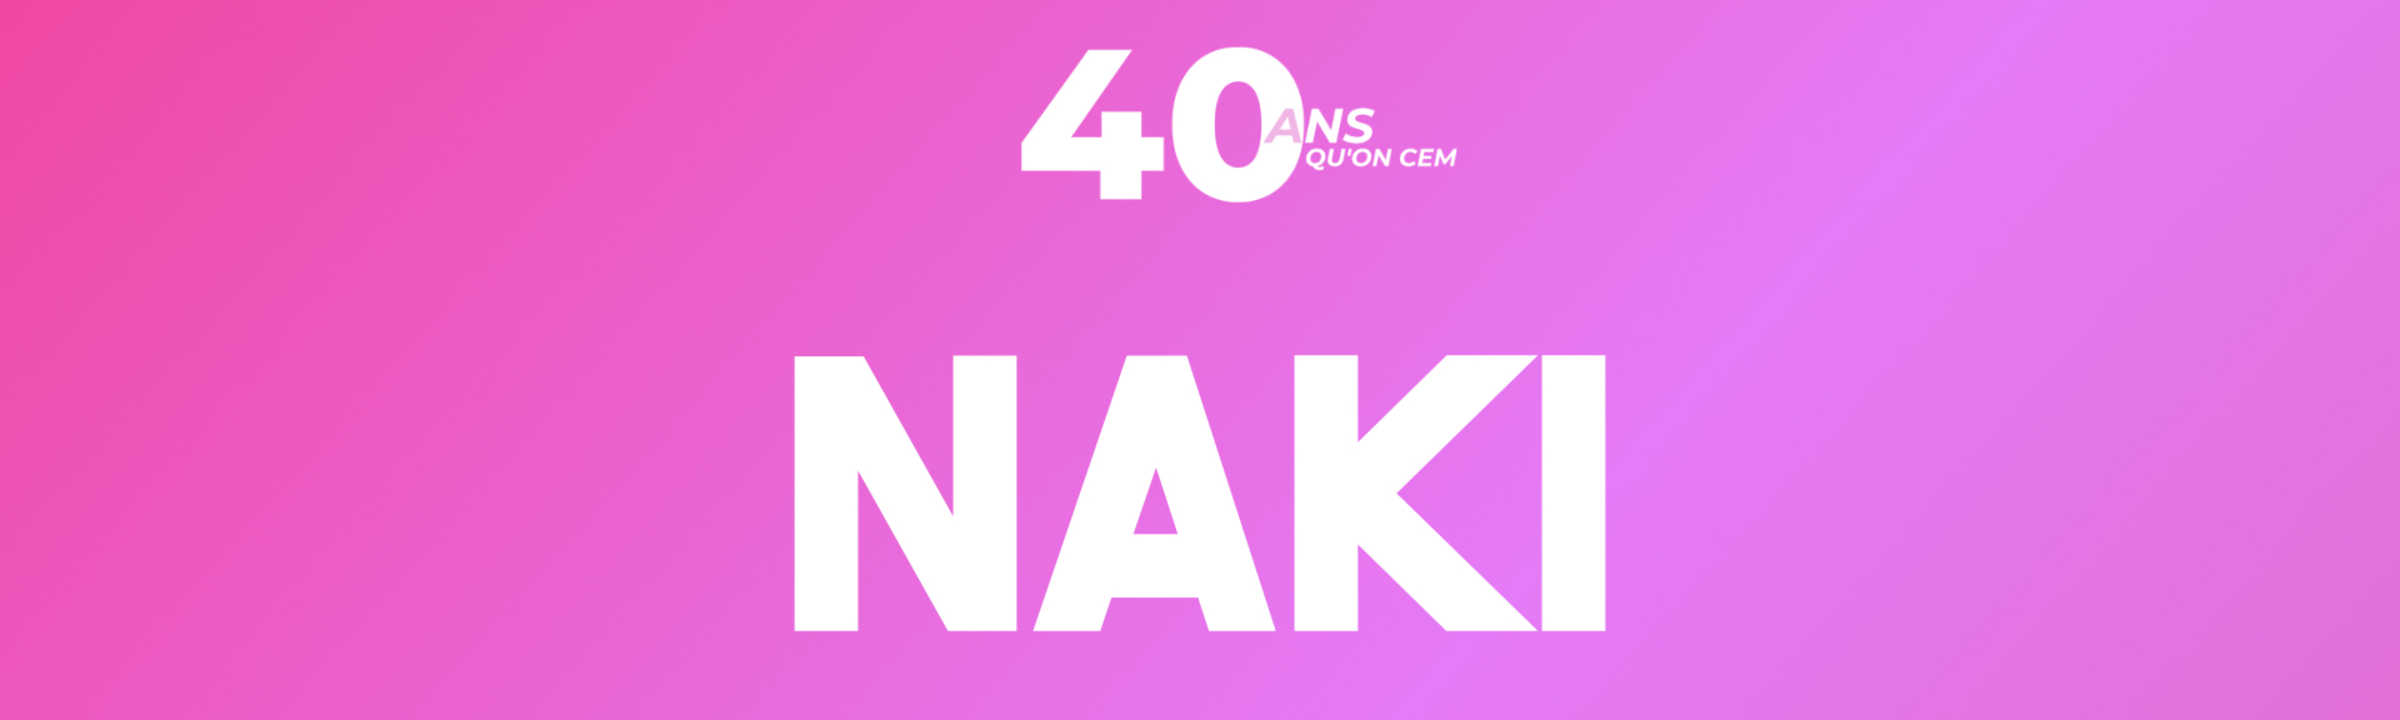 40e Naki